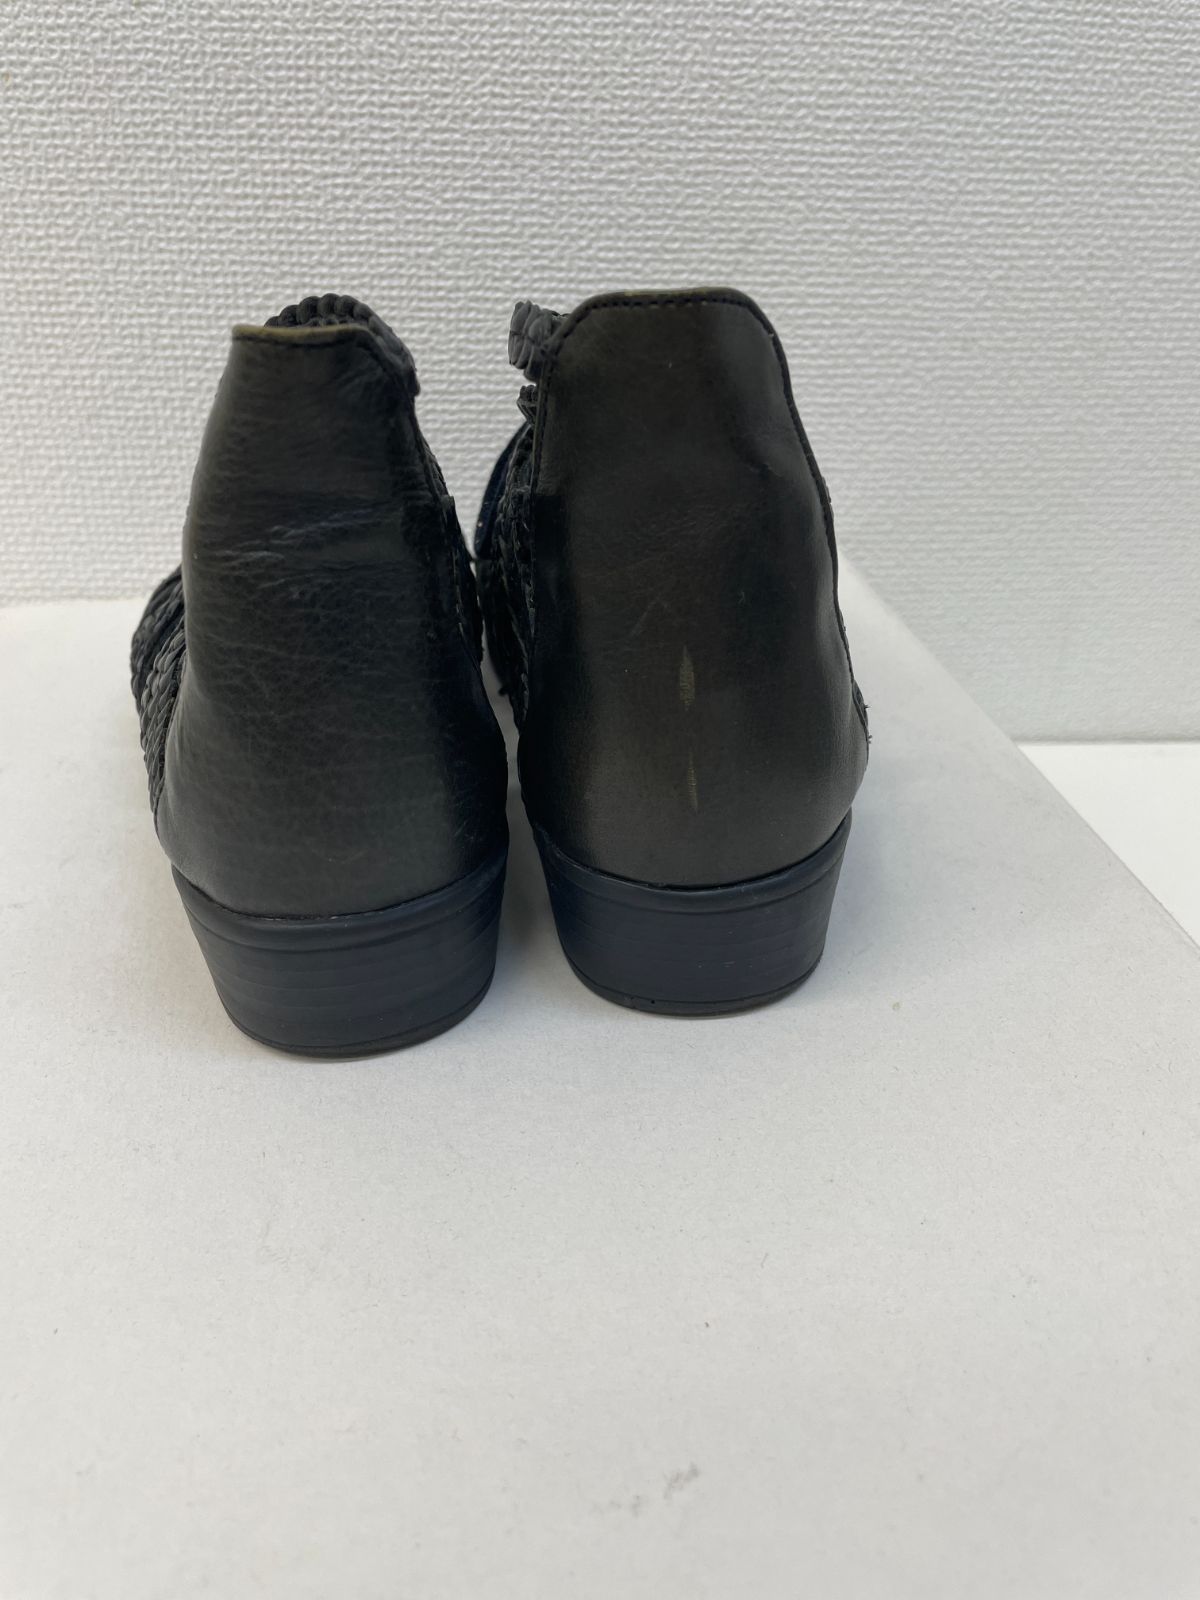 ドイツ Ganter ガンター 黒 コンフォートシューズ 靴(UK4) 注文